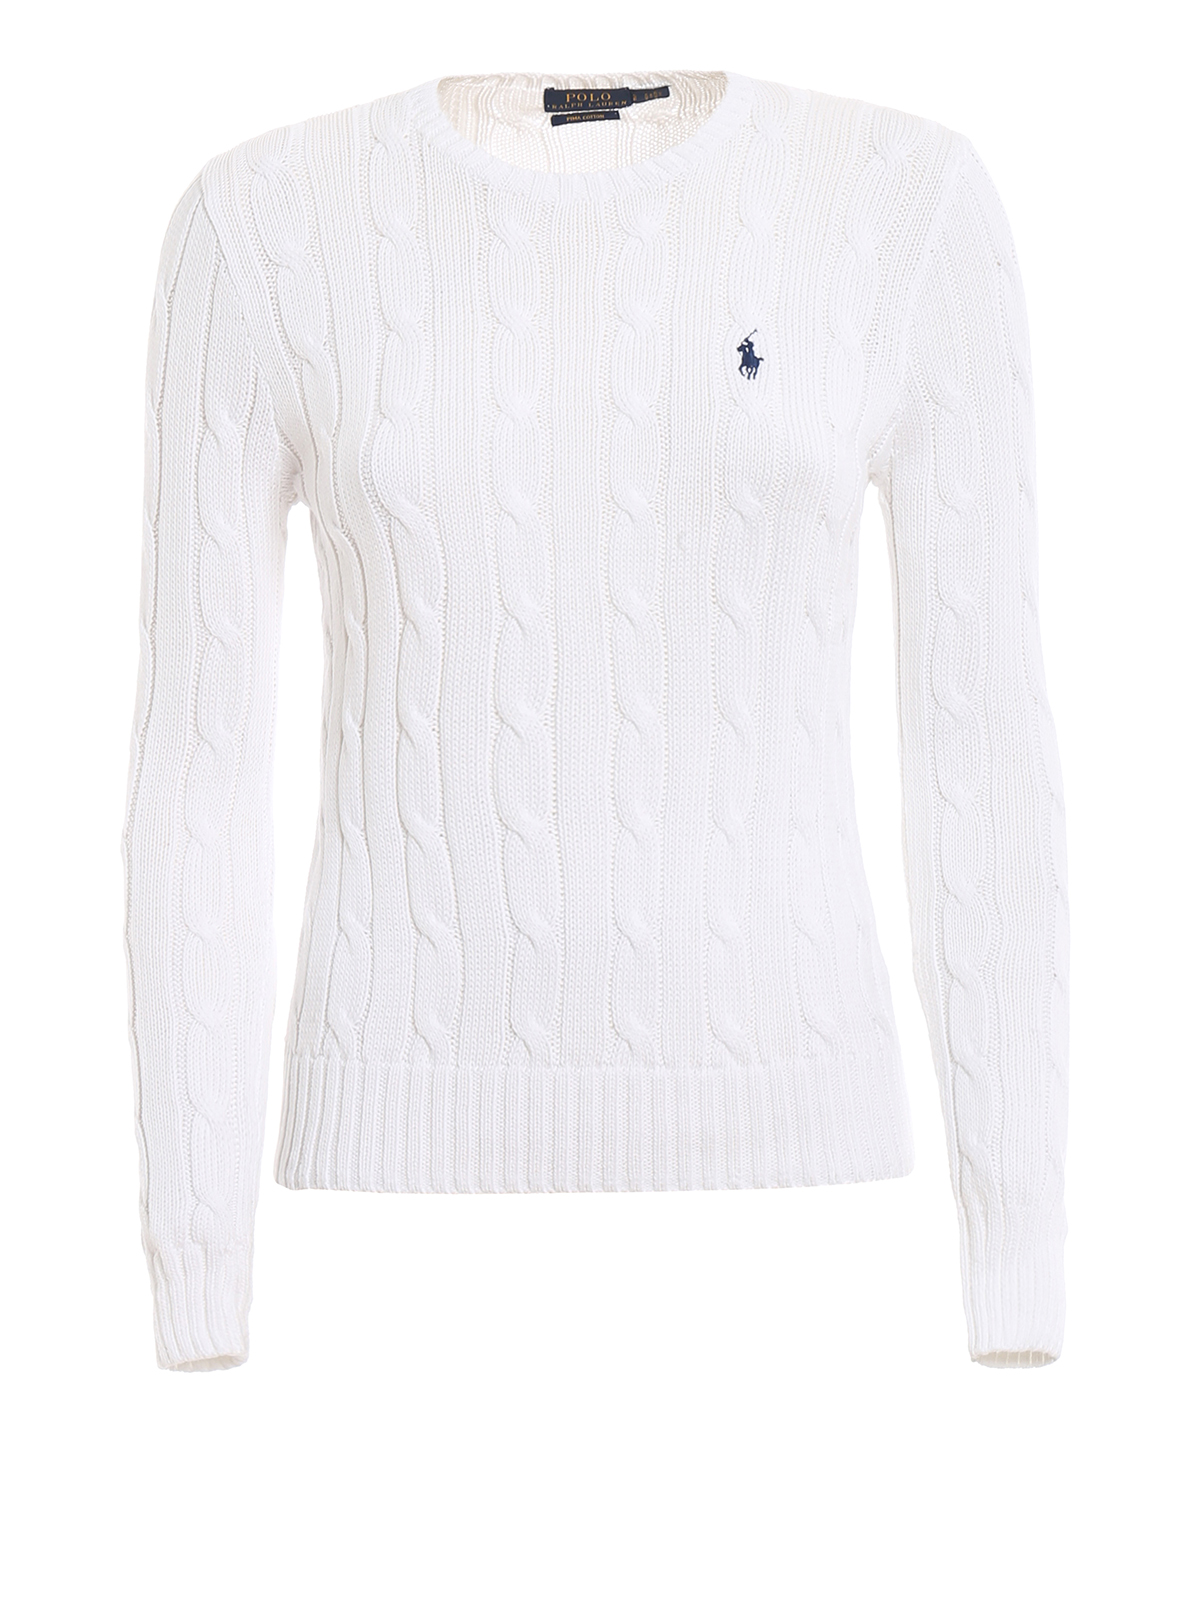 white polo sweater